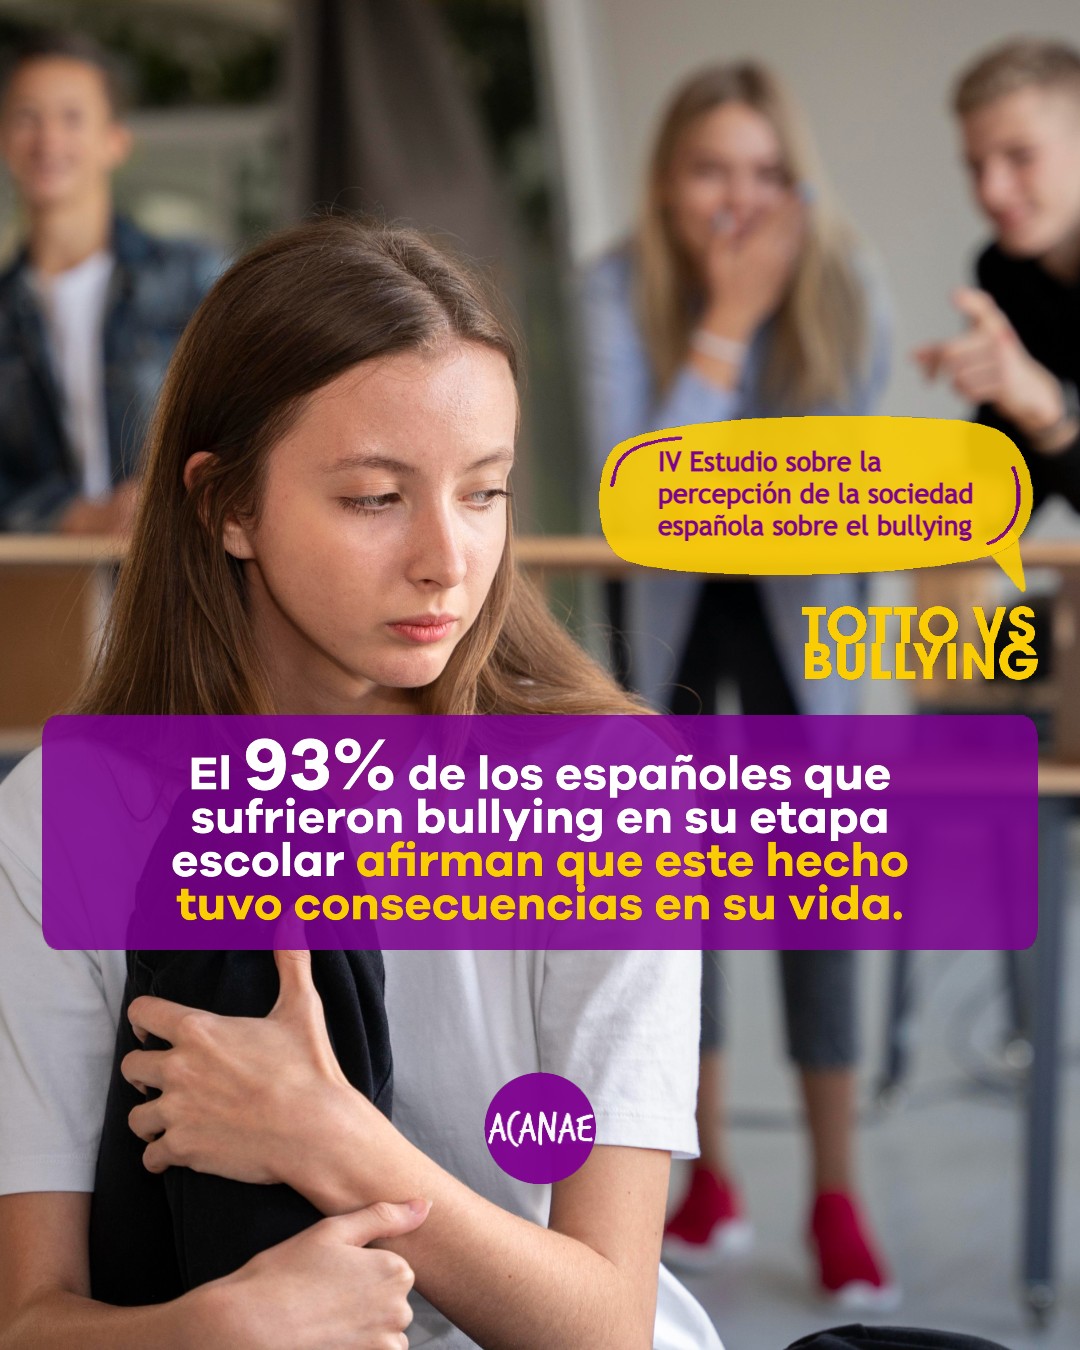 El 93% de los españoles que sufrieron bullying en su etapa escolar afirman que este hecho tuvo consecuencias en su vida.